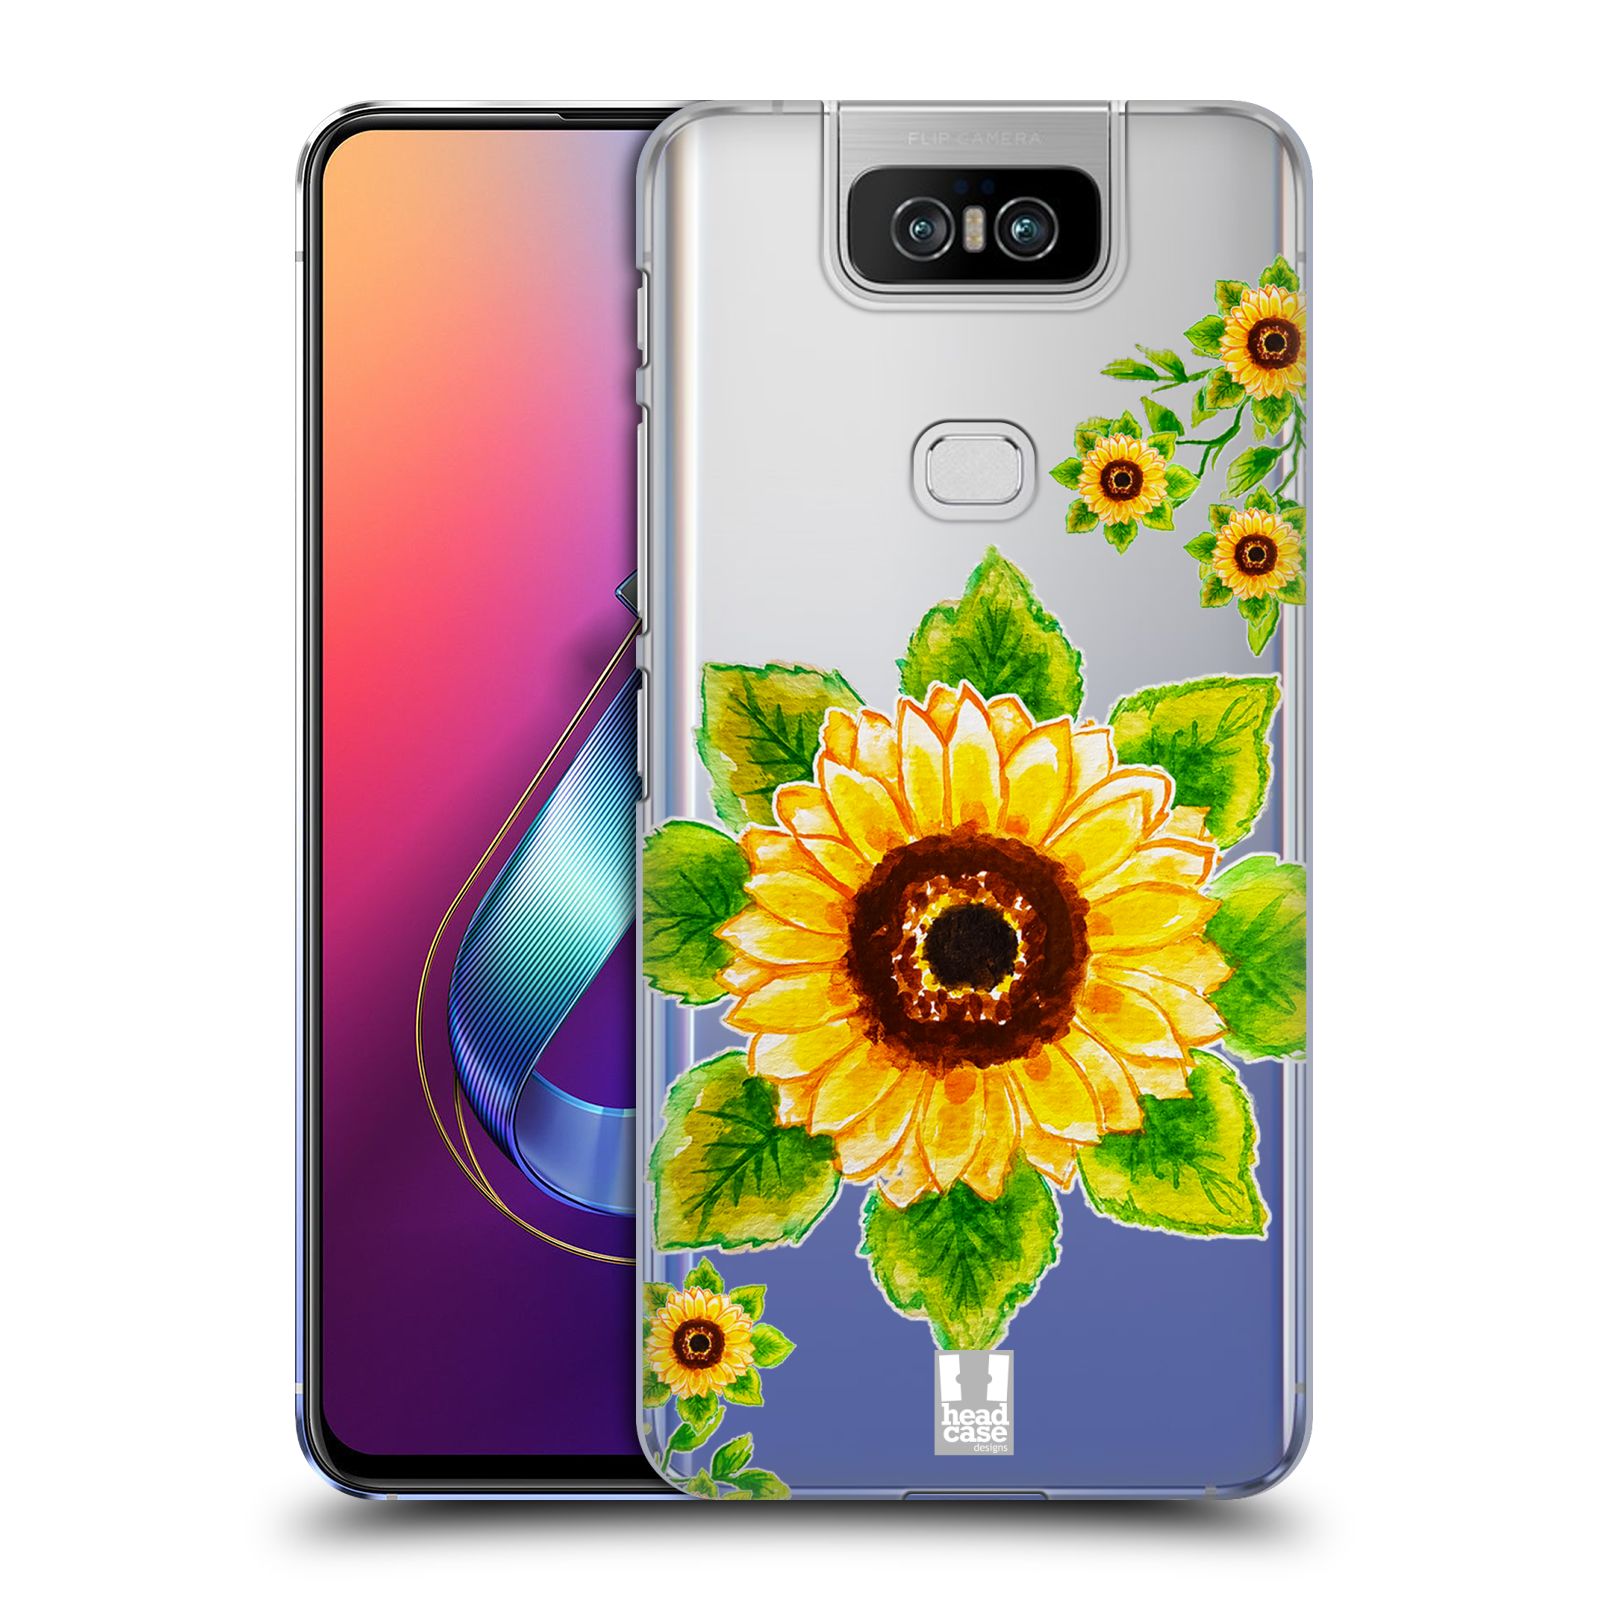 Pouzdro na mobil Asus Zenfone 6 ZS630KL - HEAD CASE - Květina Slunečnice vodní barvy